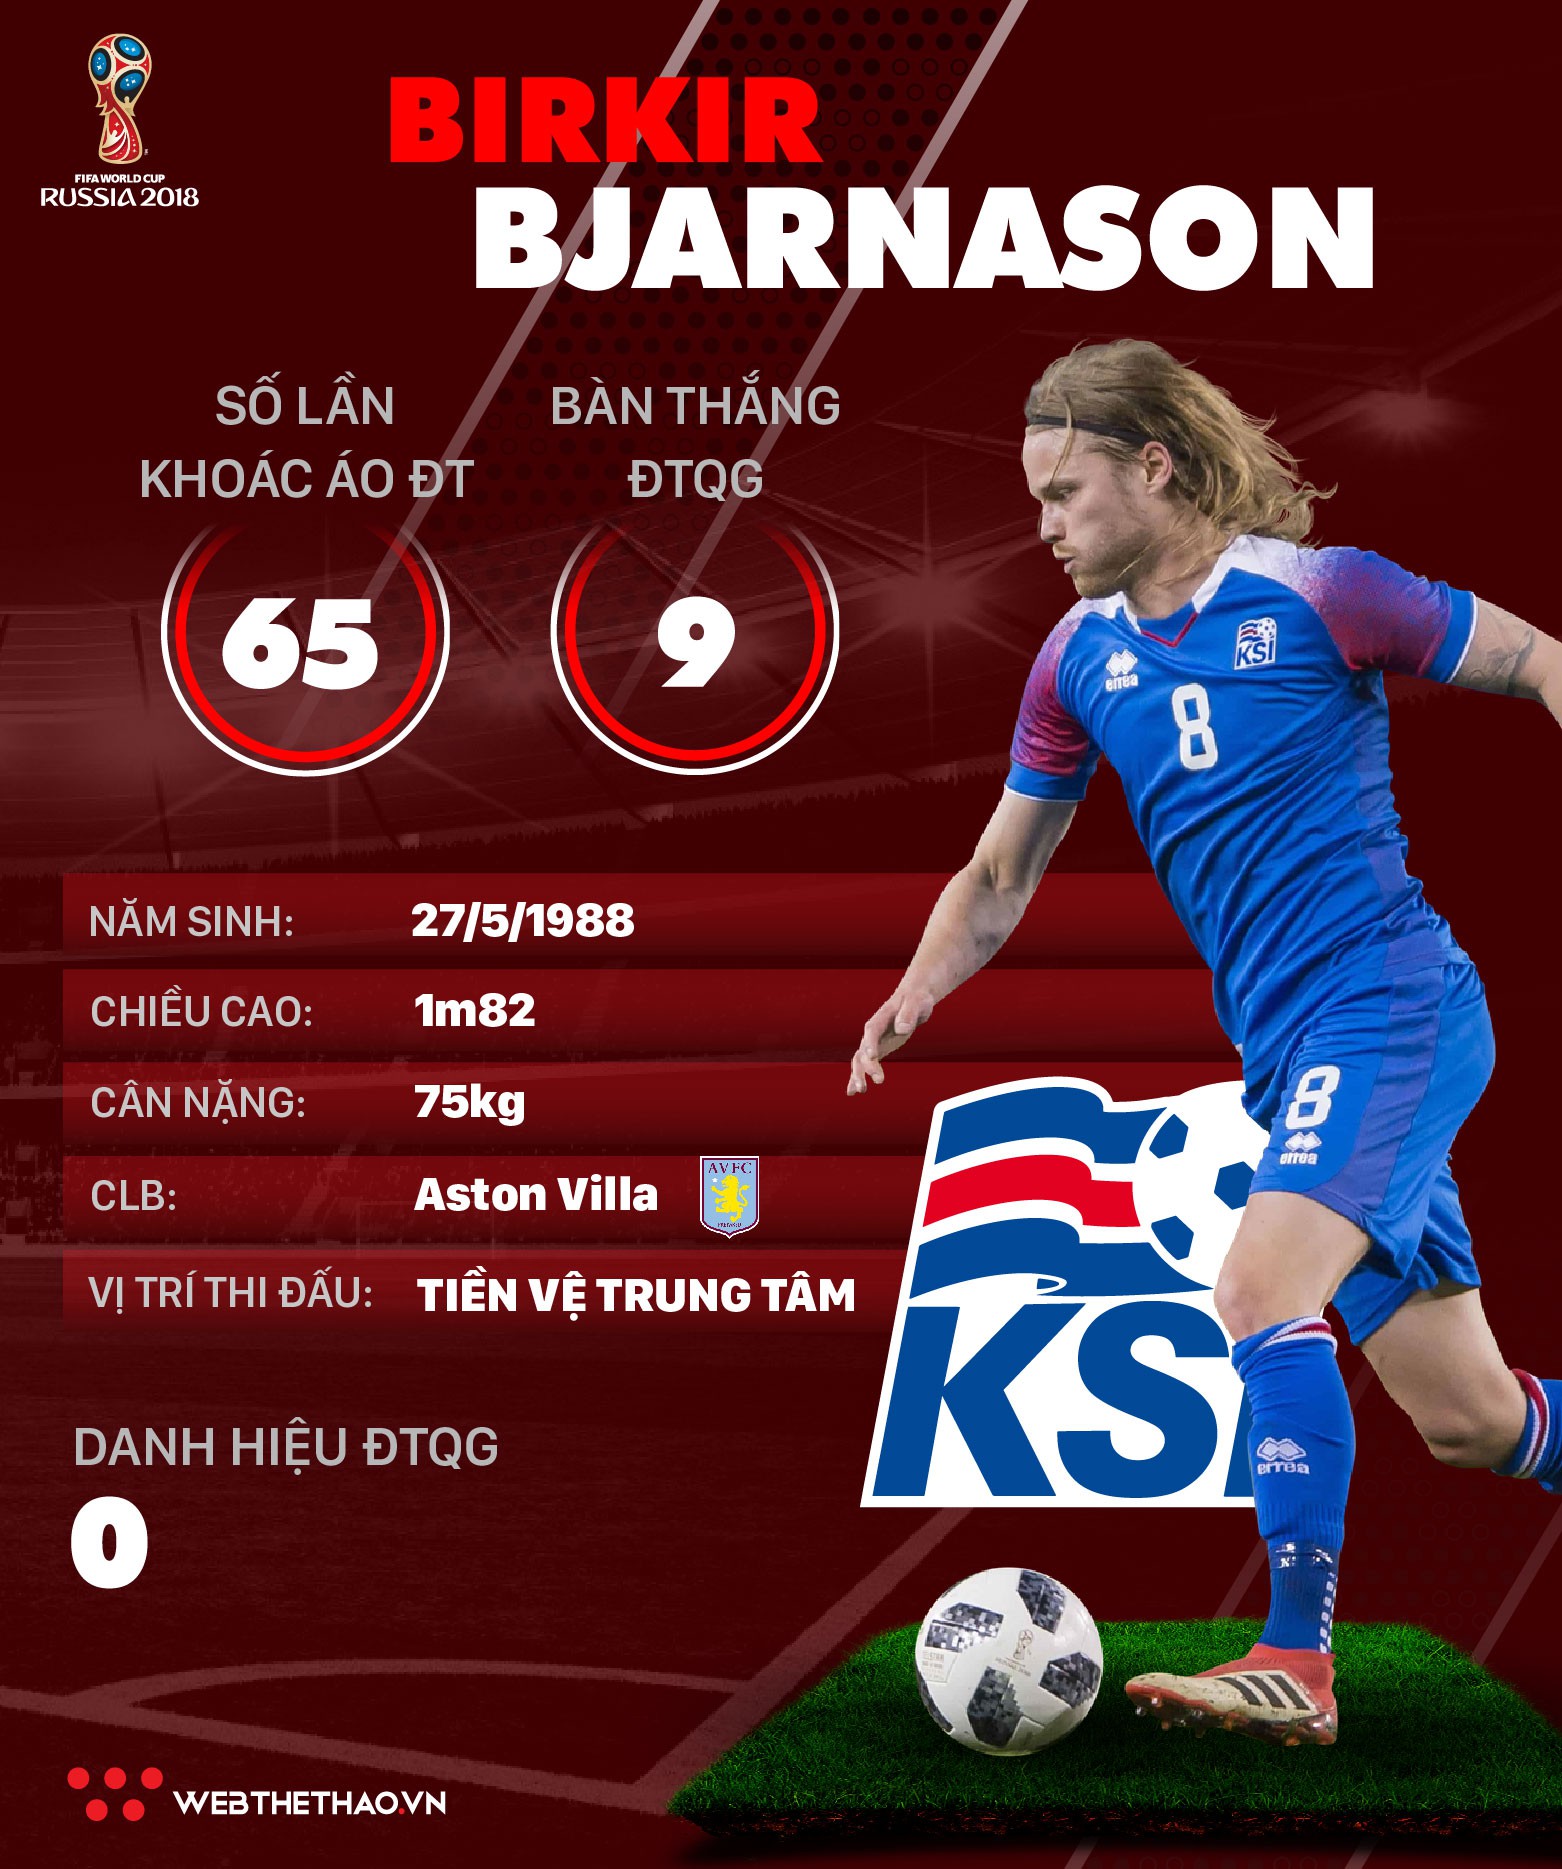 Thông tin cầu thủ Birkir Bjarnason của ĐT Iceland dự World Cup 2018 - Ảnh 1.